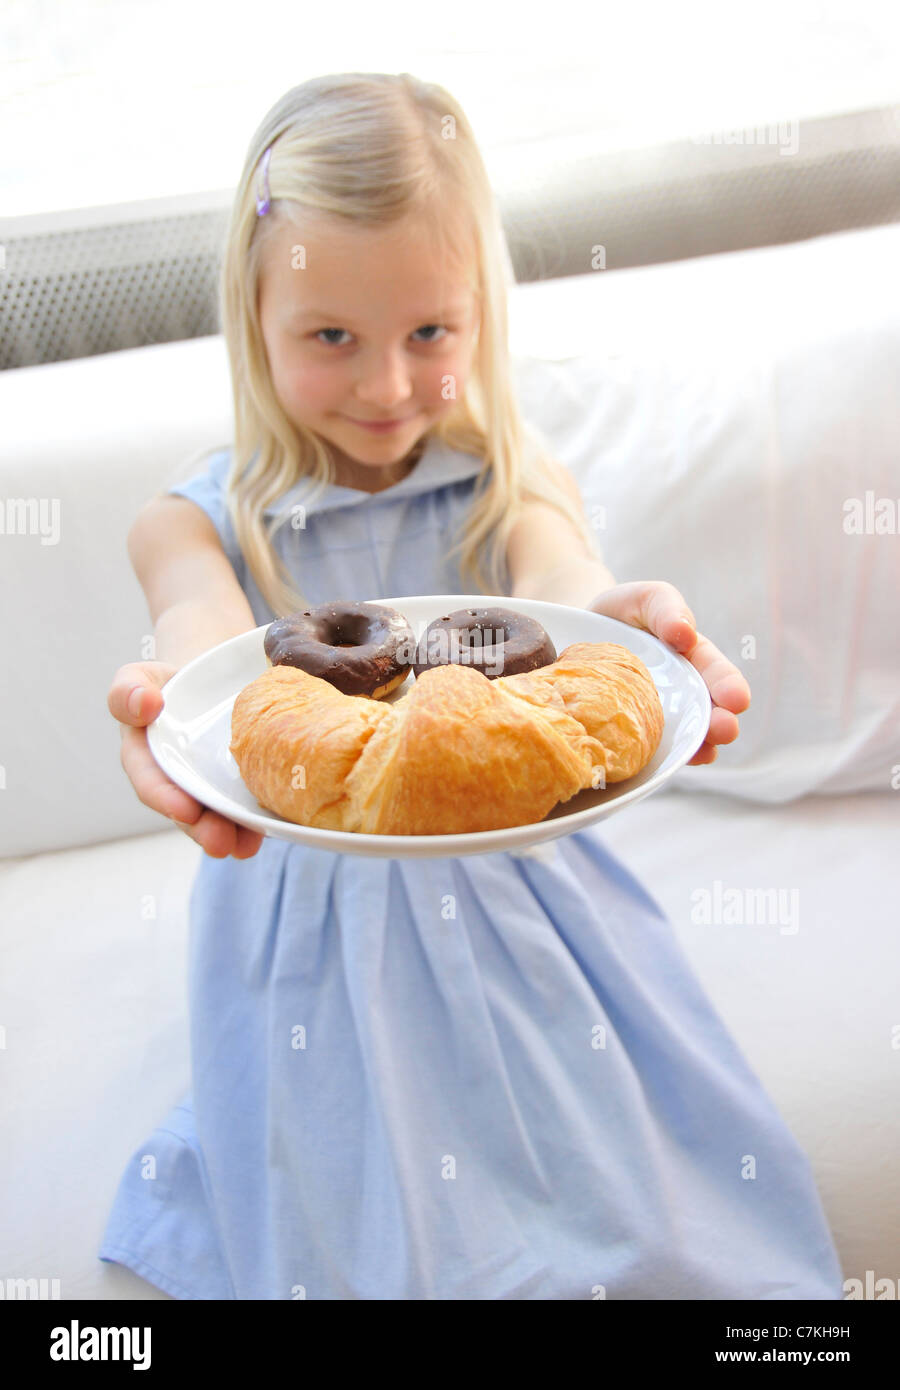 Jeune fille, 6, avec une robe bleue présentant une plaque avec des beignets au chocolat et un croissant Banque D'Images